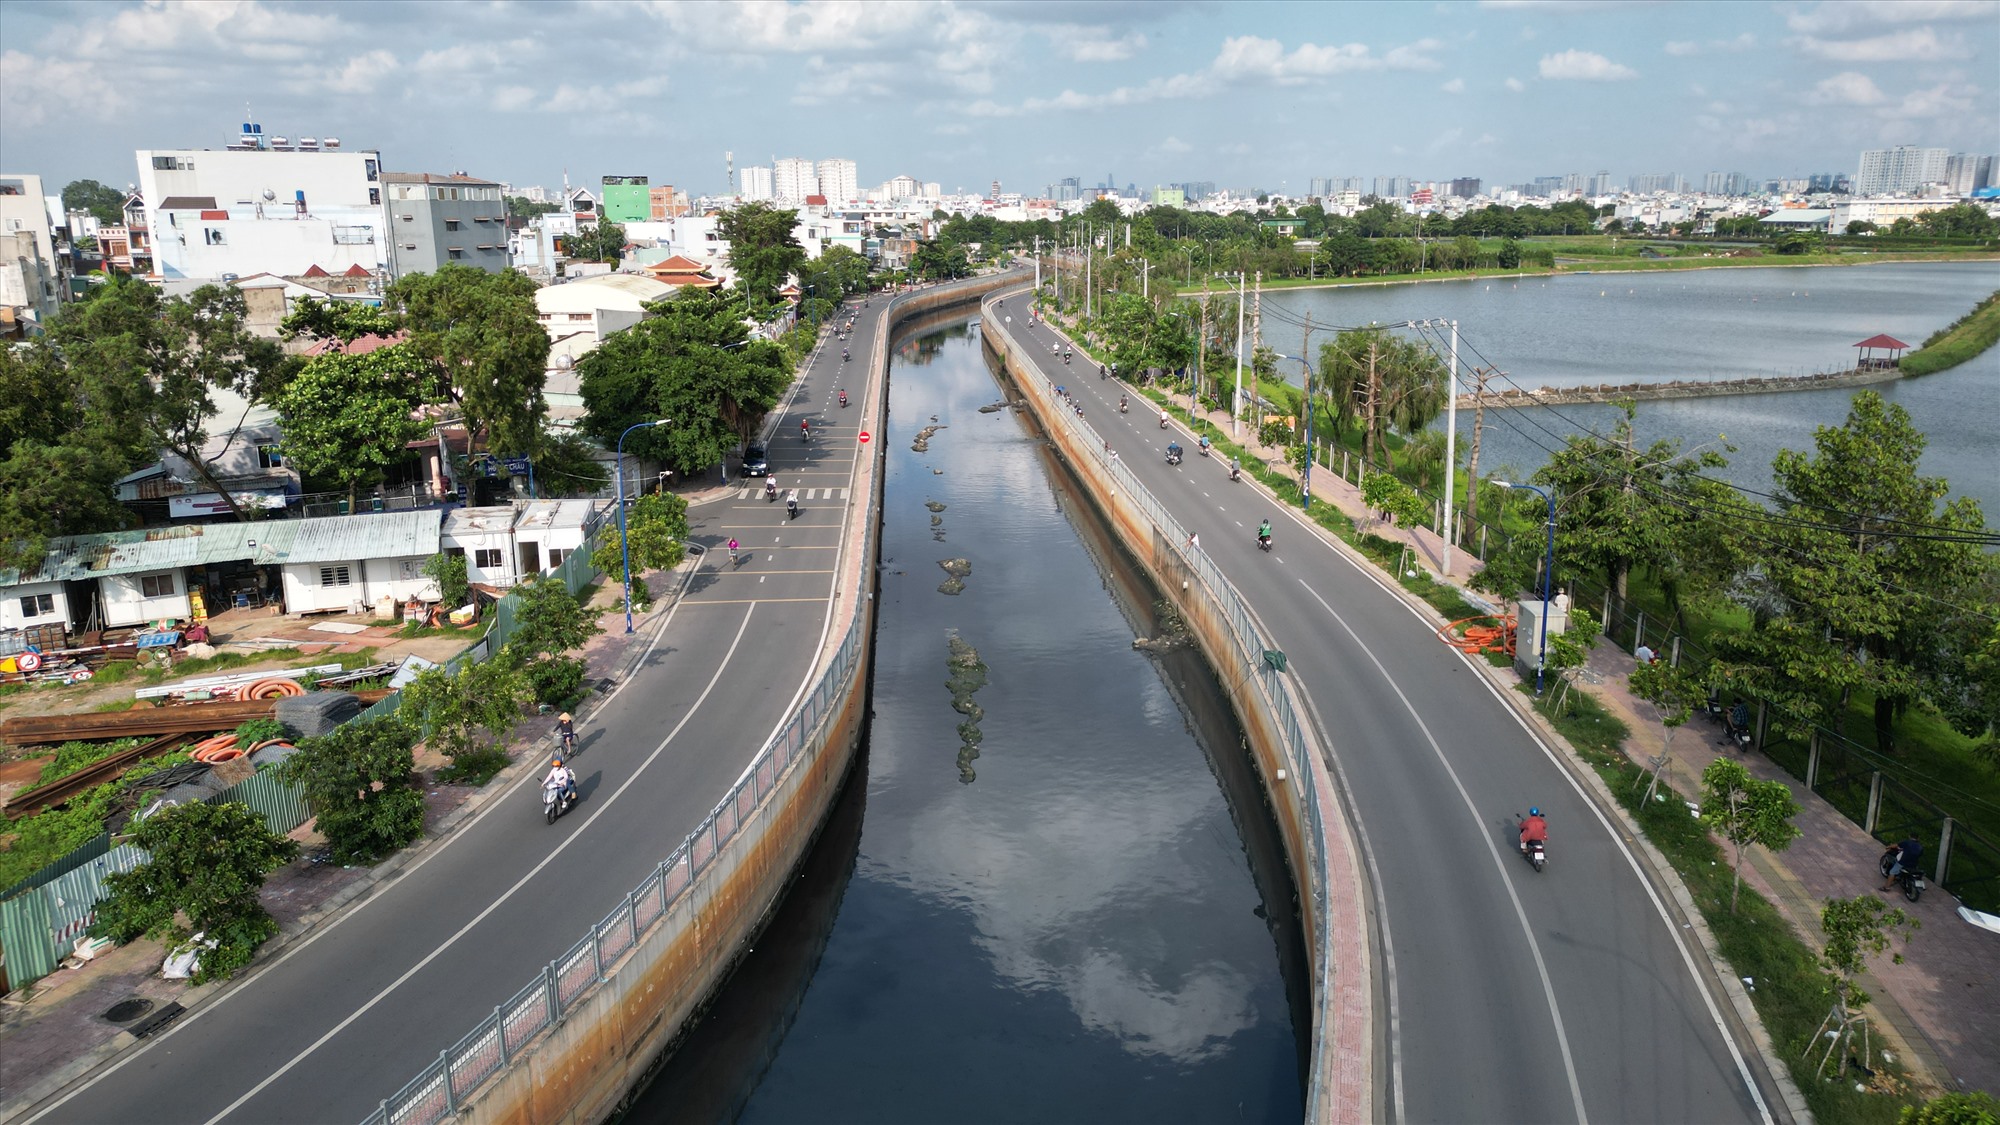 Kênh Nước Đen chảy qua khu vực phường Bình Hưng Hòa A (quận Bình Tân) nhiều năm qua là “điểm đen” về ô nhiễm môi trường. Tháng 4.2020, dự án được nâng cấp, cải tạo đường và kênh (đoạn từ cống hộp hiện hữu đến kênh Tham Lương) khởi công và cơ bản hoàn thành dịp Tết 2022.